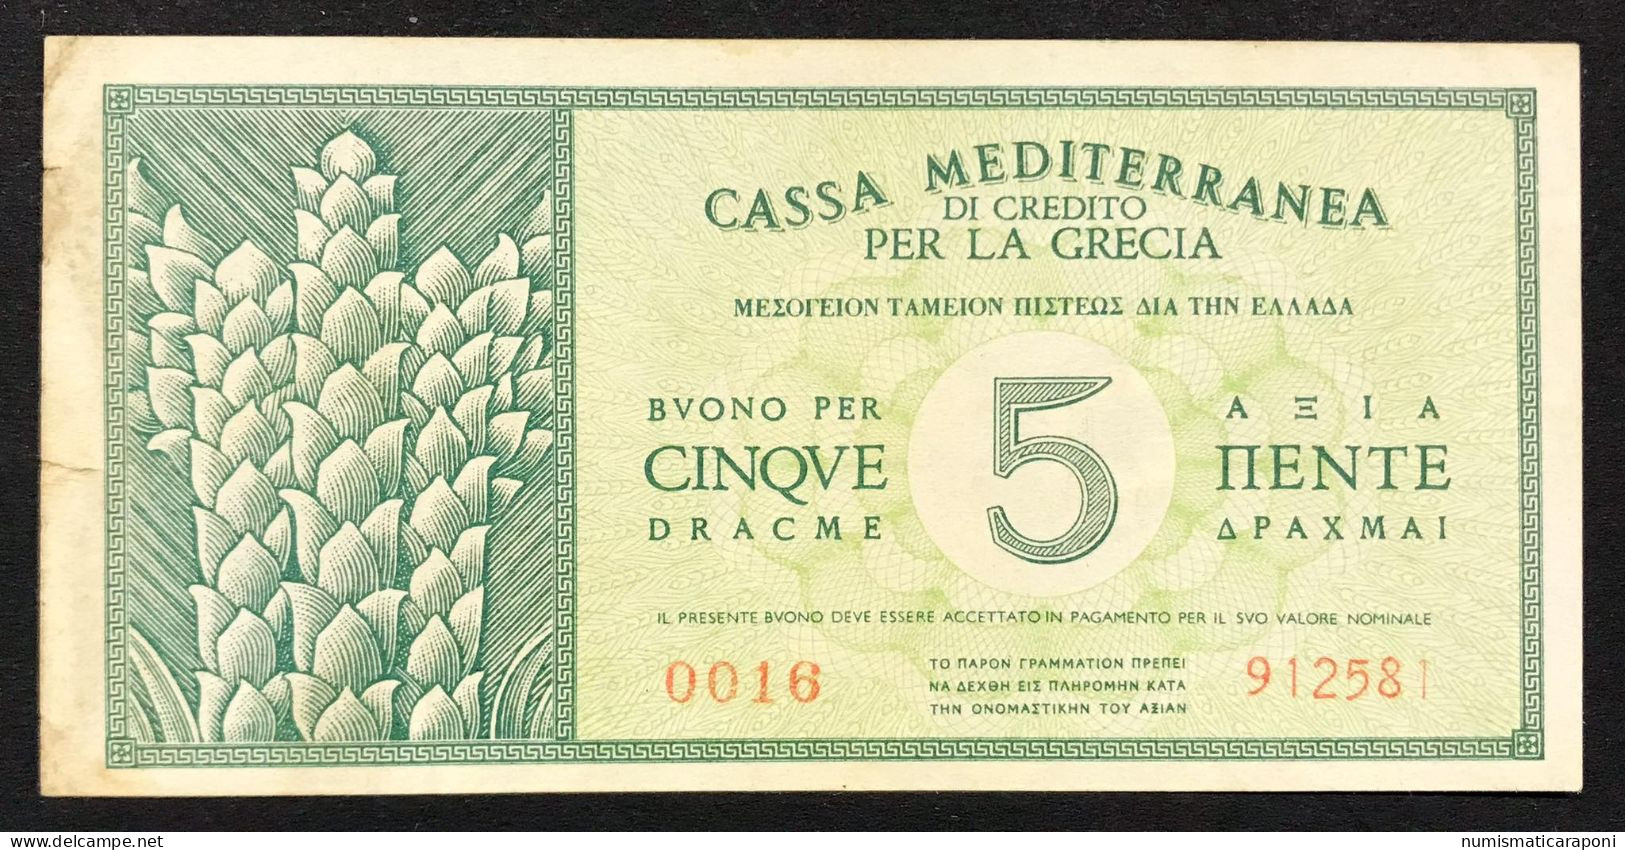 CASSA MEDITERRANEA DI CREDITO PER LA GRECIA 5 DRACME APOLLO 1941 NC  LOTTO 2682 - Unclassified